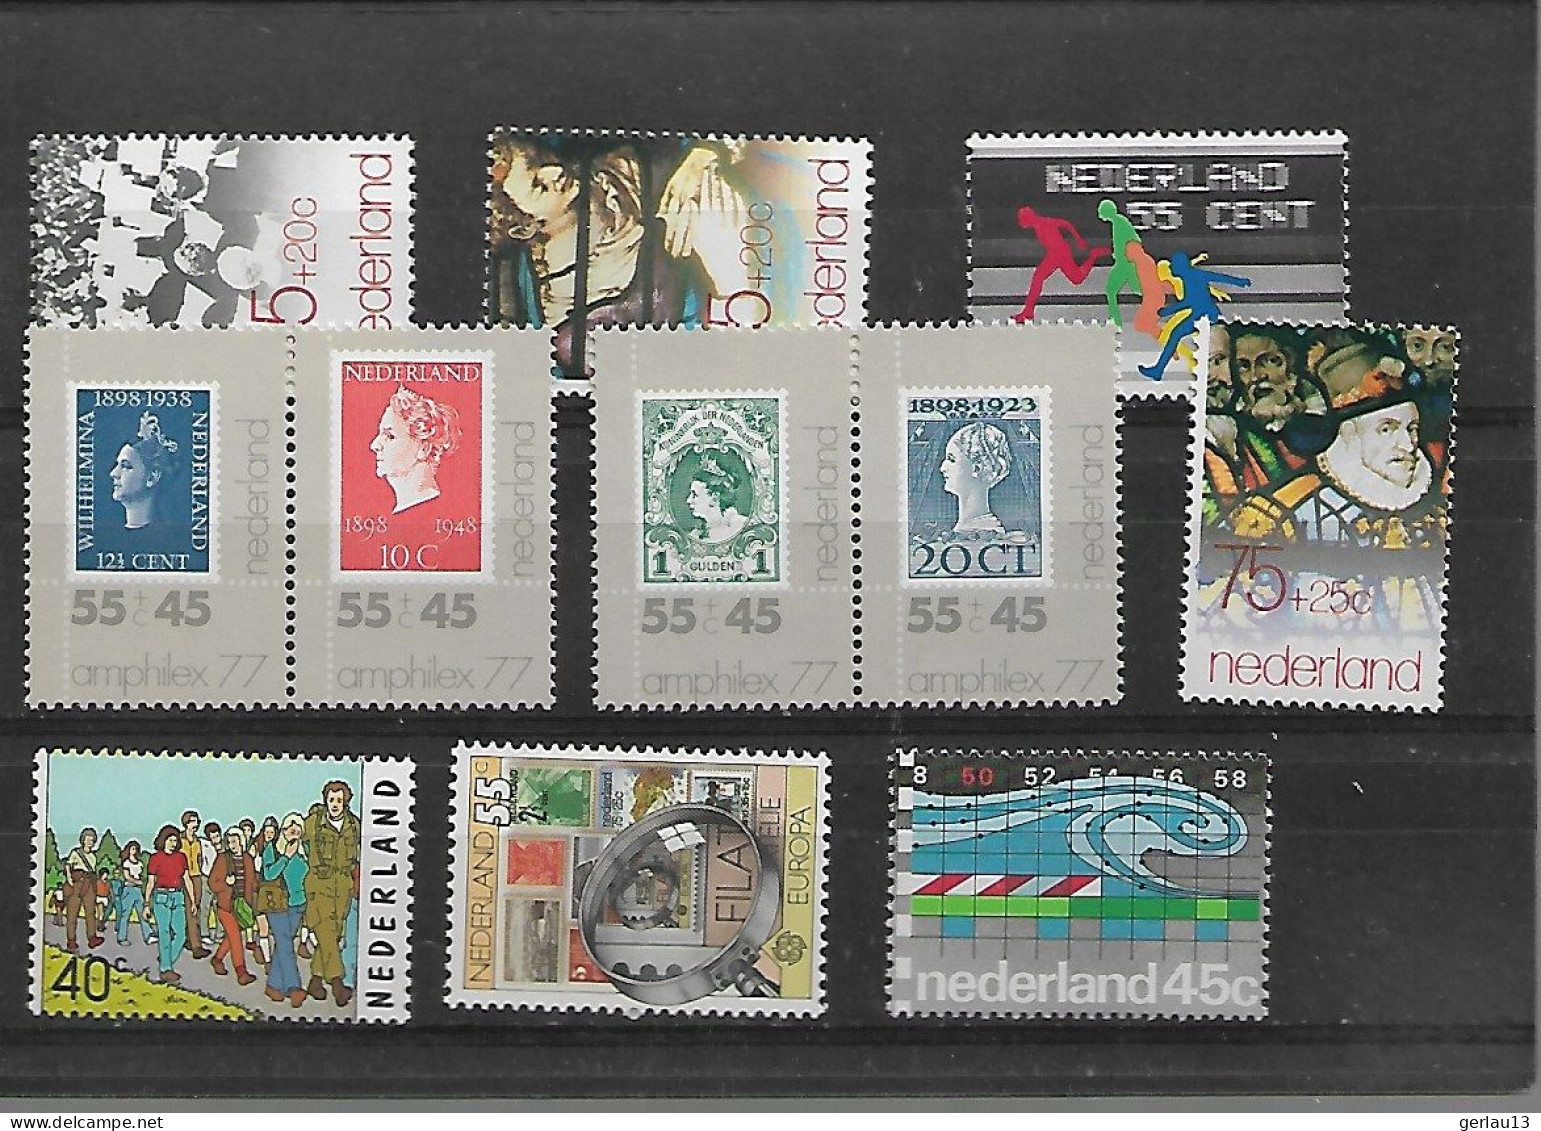 PETIT NEUFS SANS CHARNIERE  **  PAYS BAS - Lots & Kiloware (mixtures) - Max. 999 Stamps